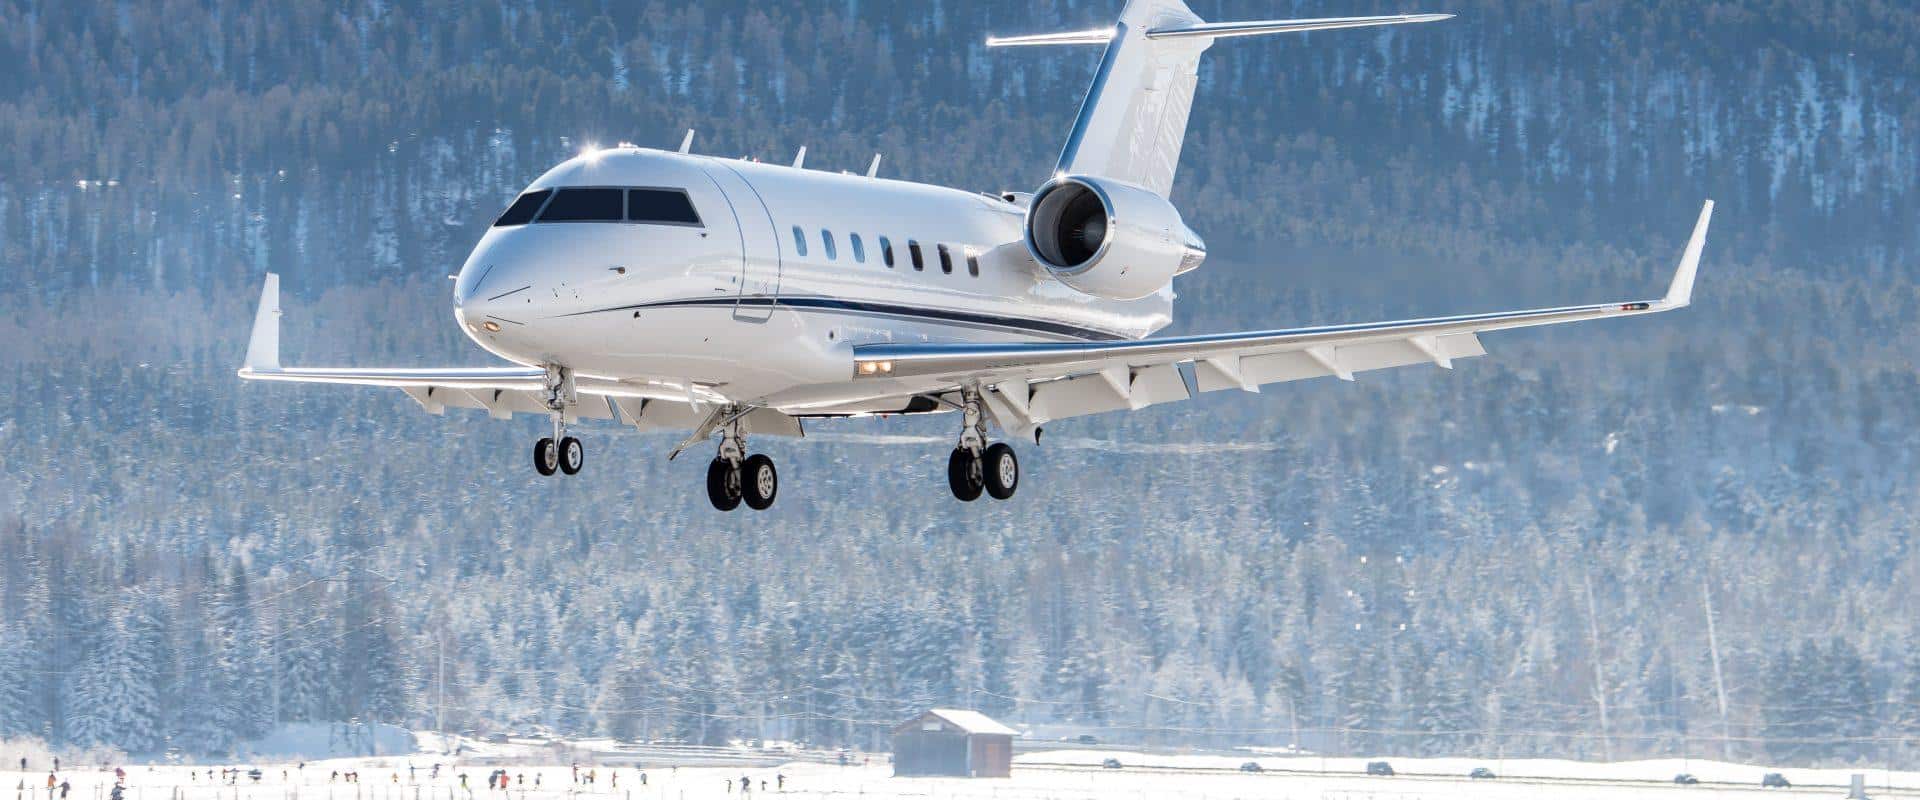 Geneva private jet landing